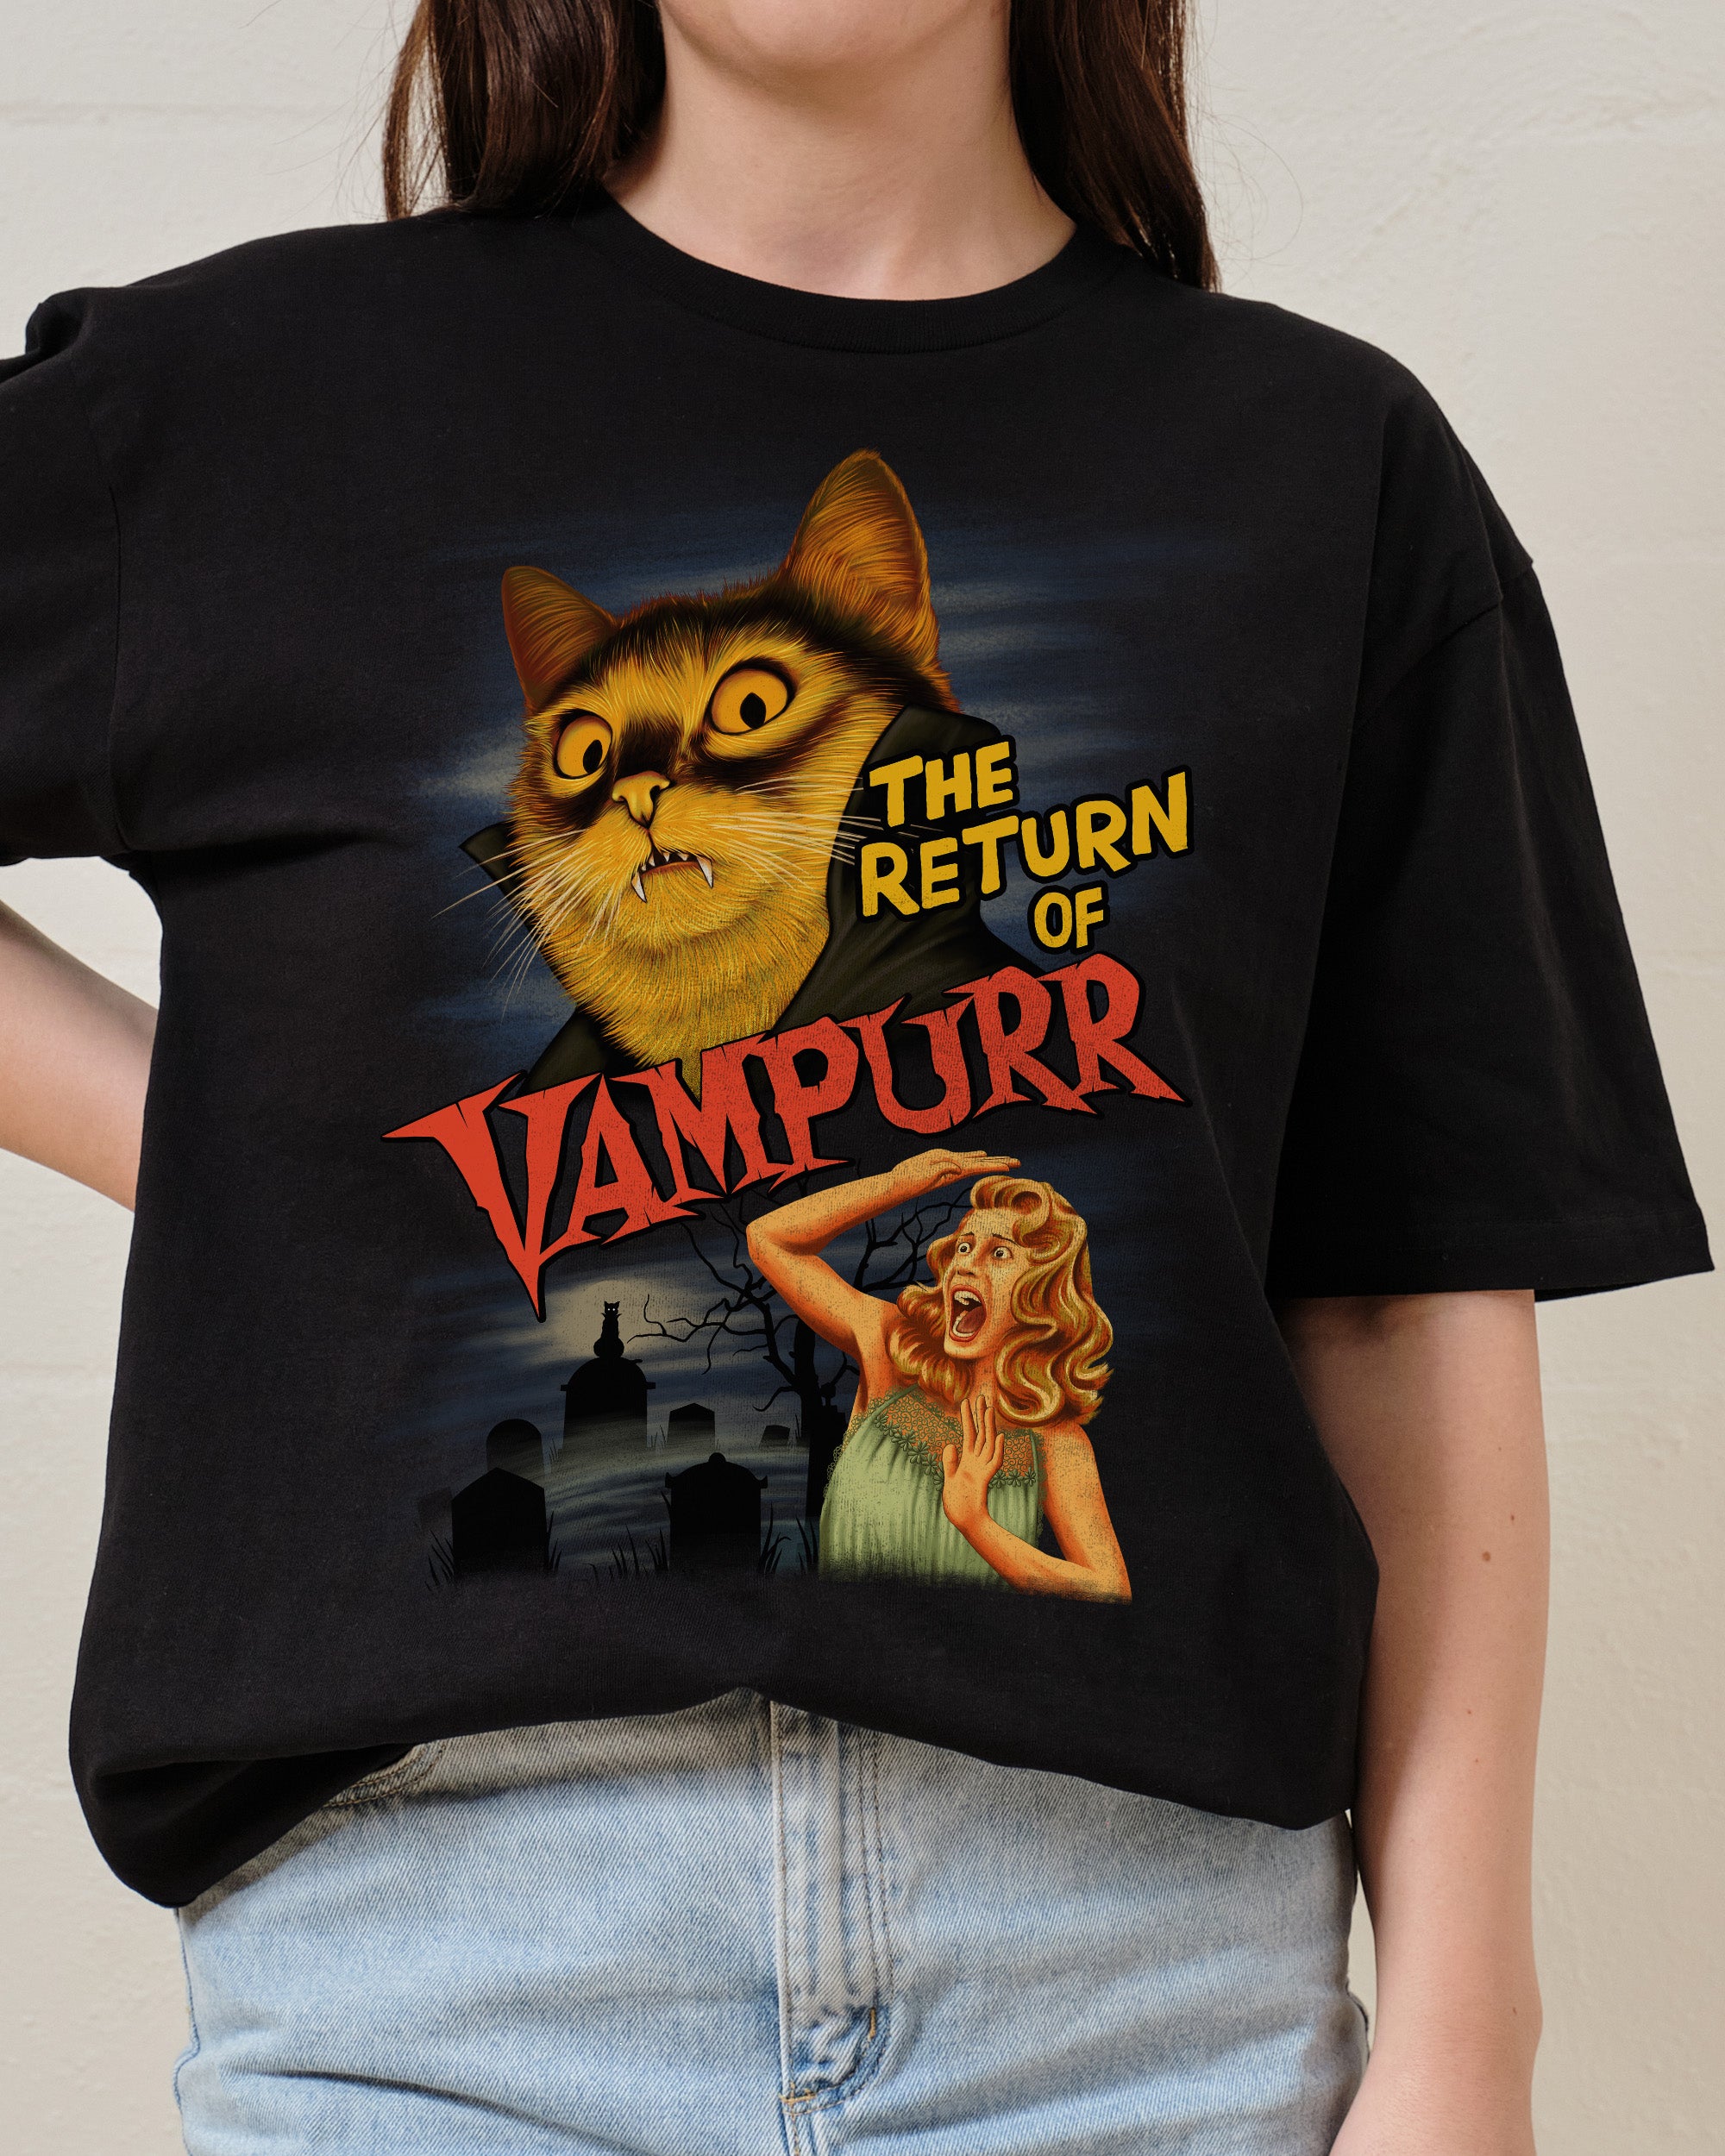 The Return of Vampurr T-Shirt Australia Online